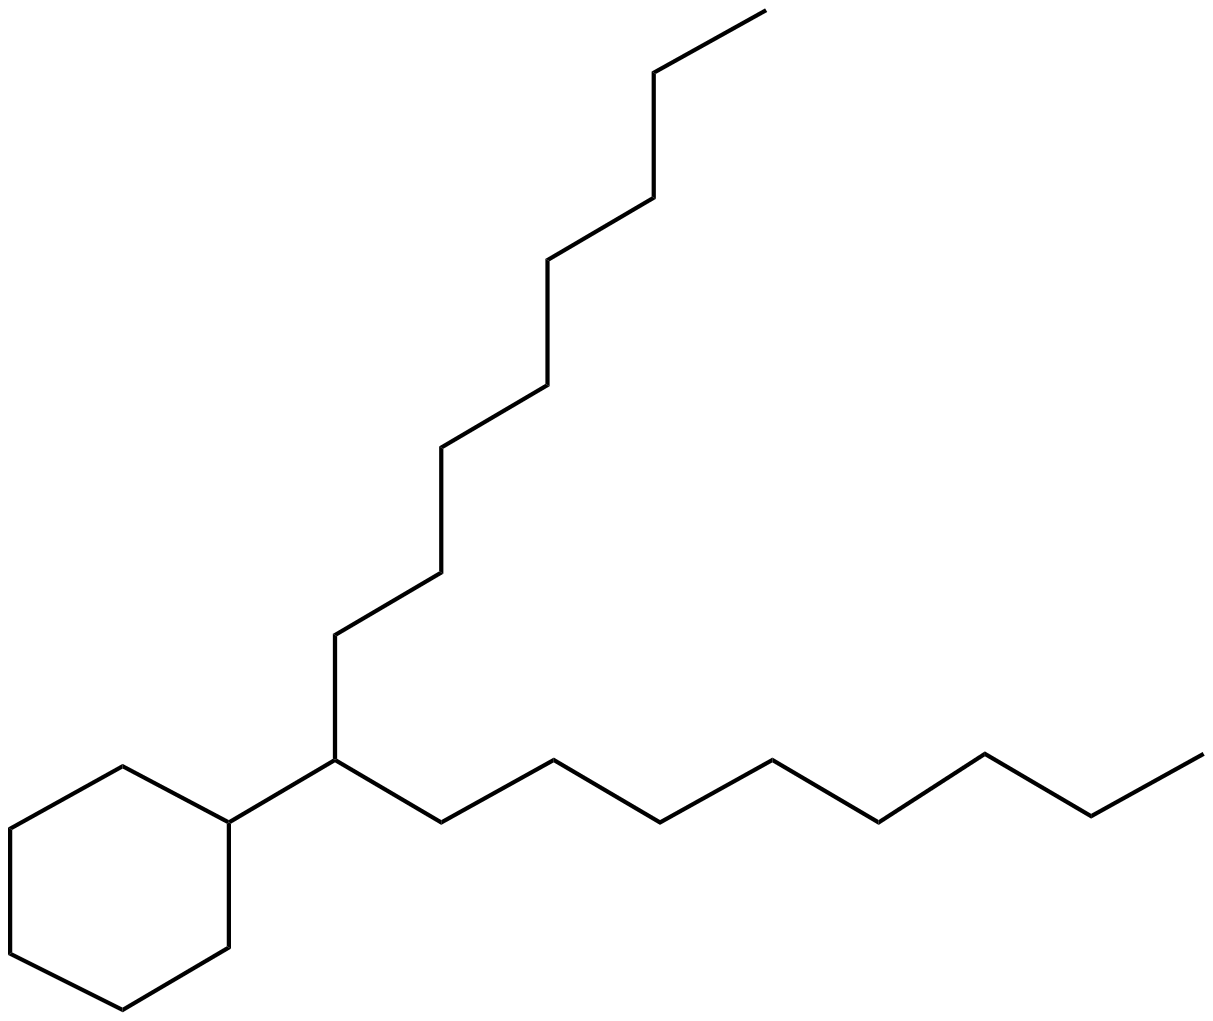 Image of (1-octylnonyl)cyclohexane